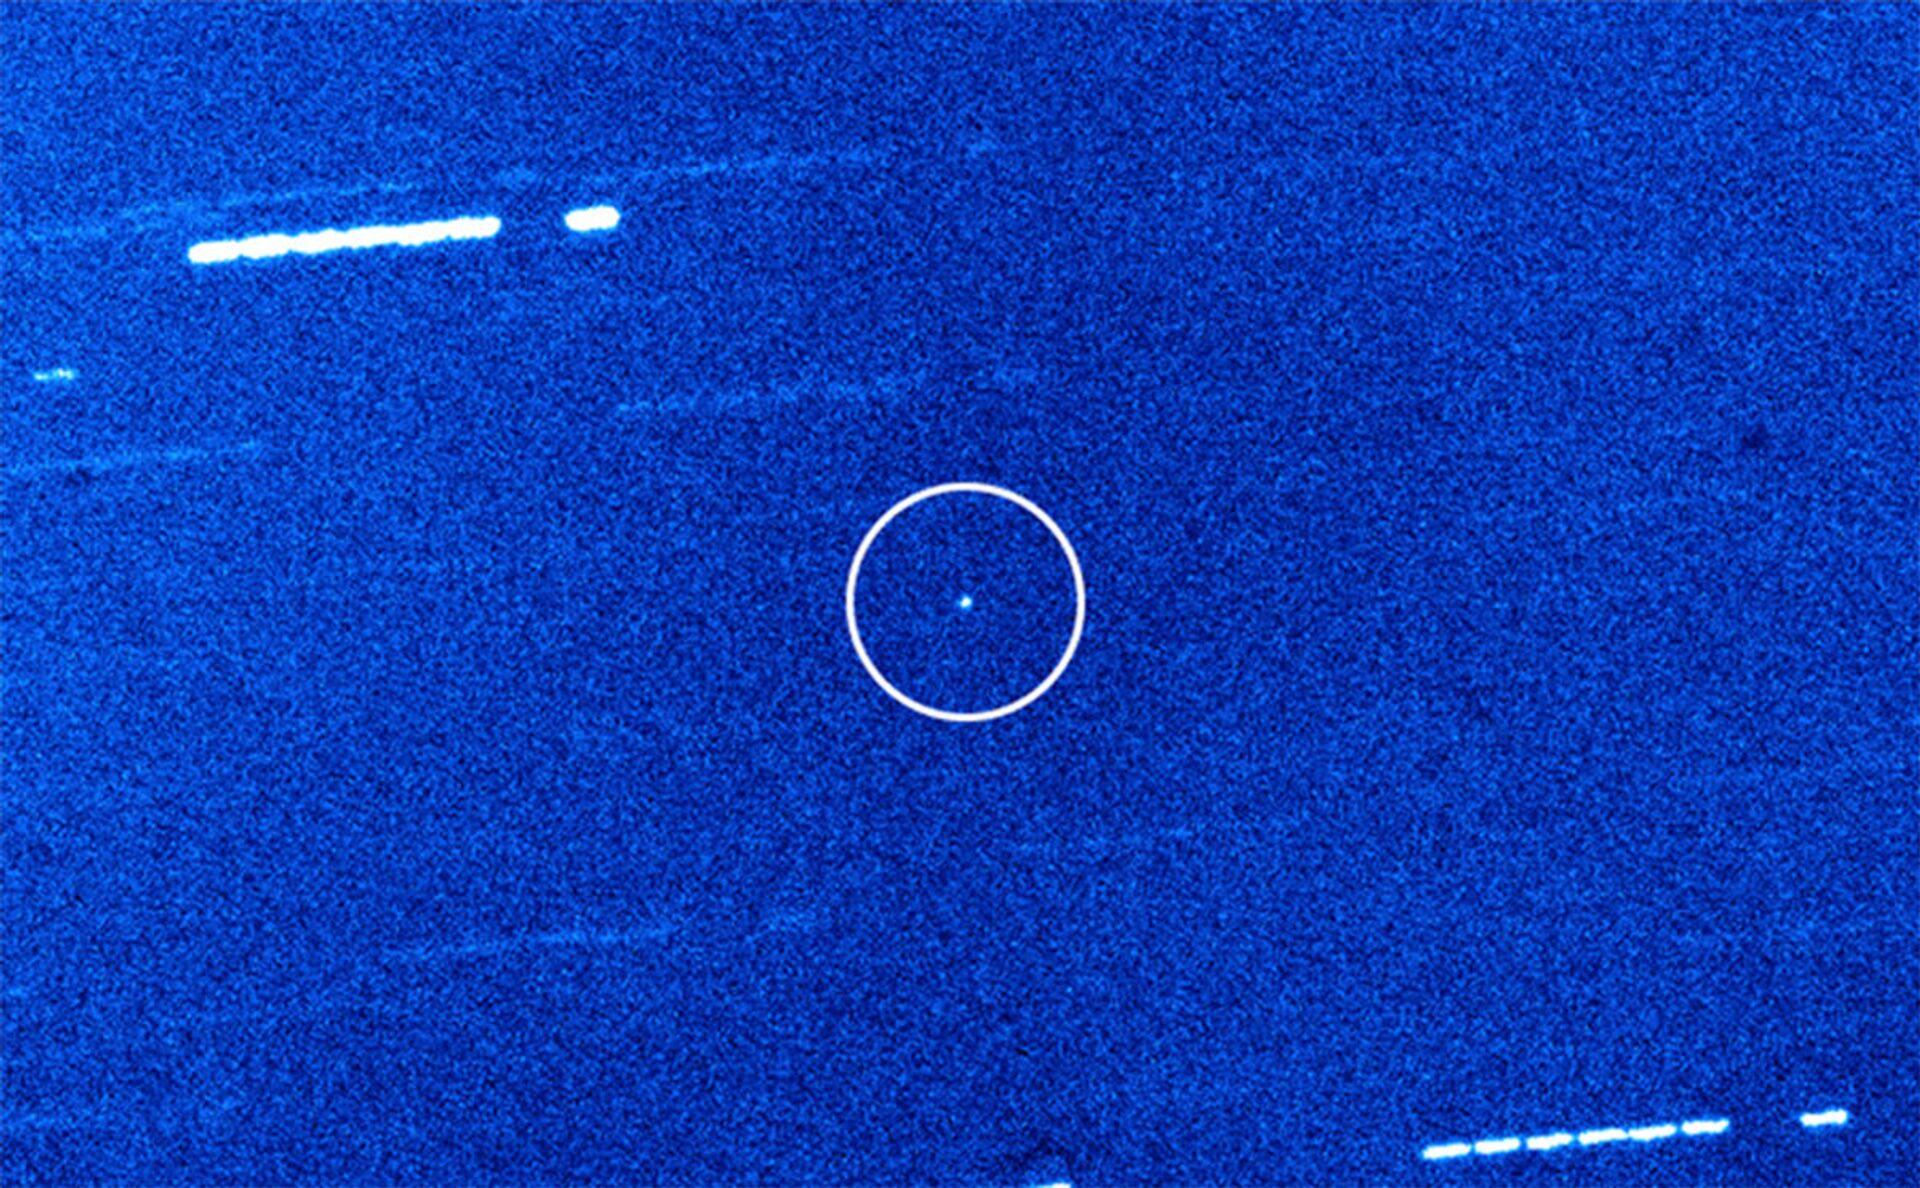 Cometa interestelar 2I/Borisov é o mais puro e inalterado do Universo, dizem novos estudos - Sputnik Brasil, 1920, 31.03.2021